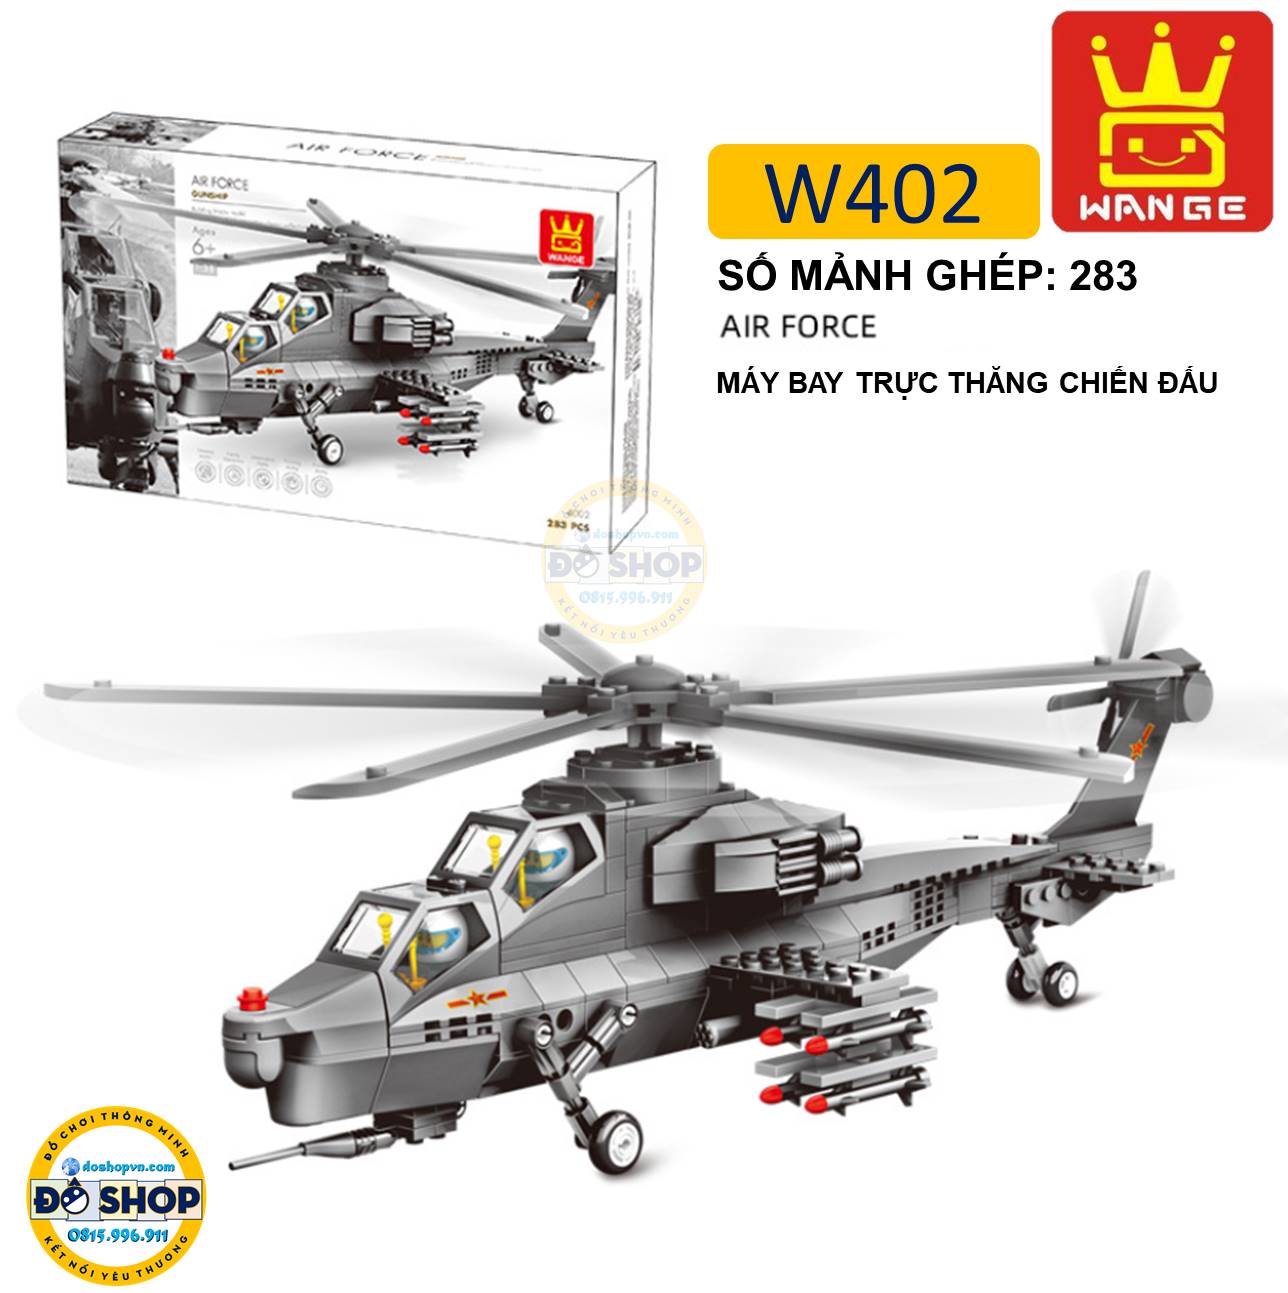 Đồ chơi lắp ráp Wange máy bay trực thăng W402